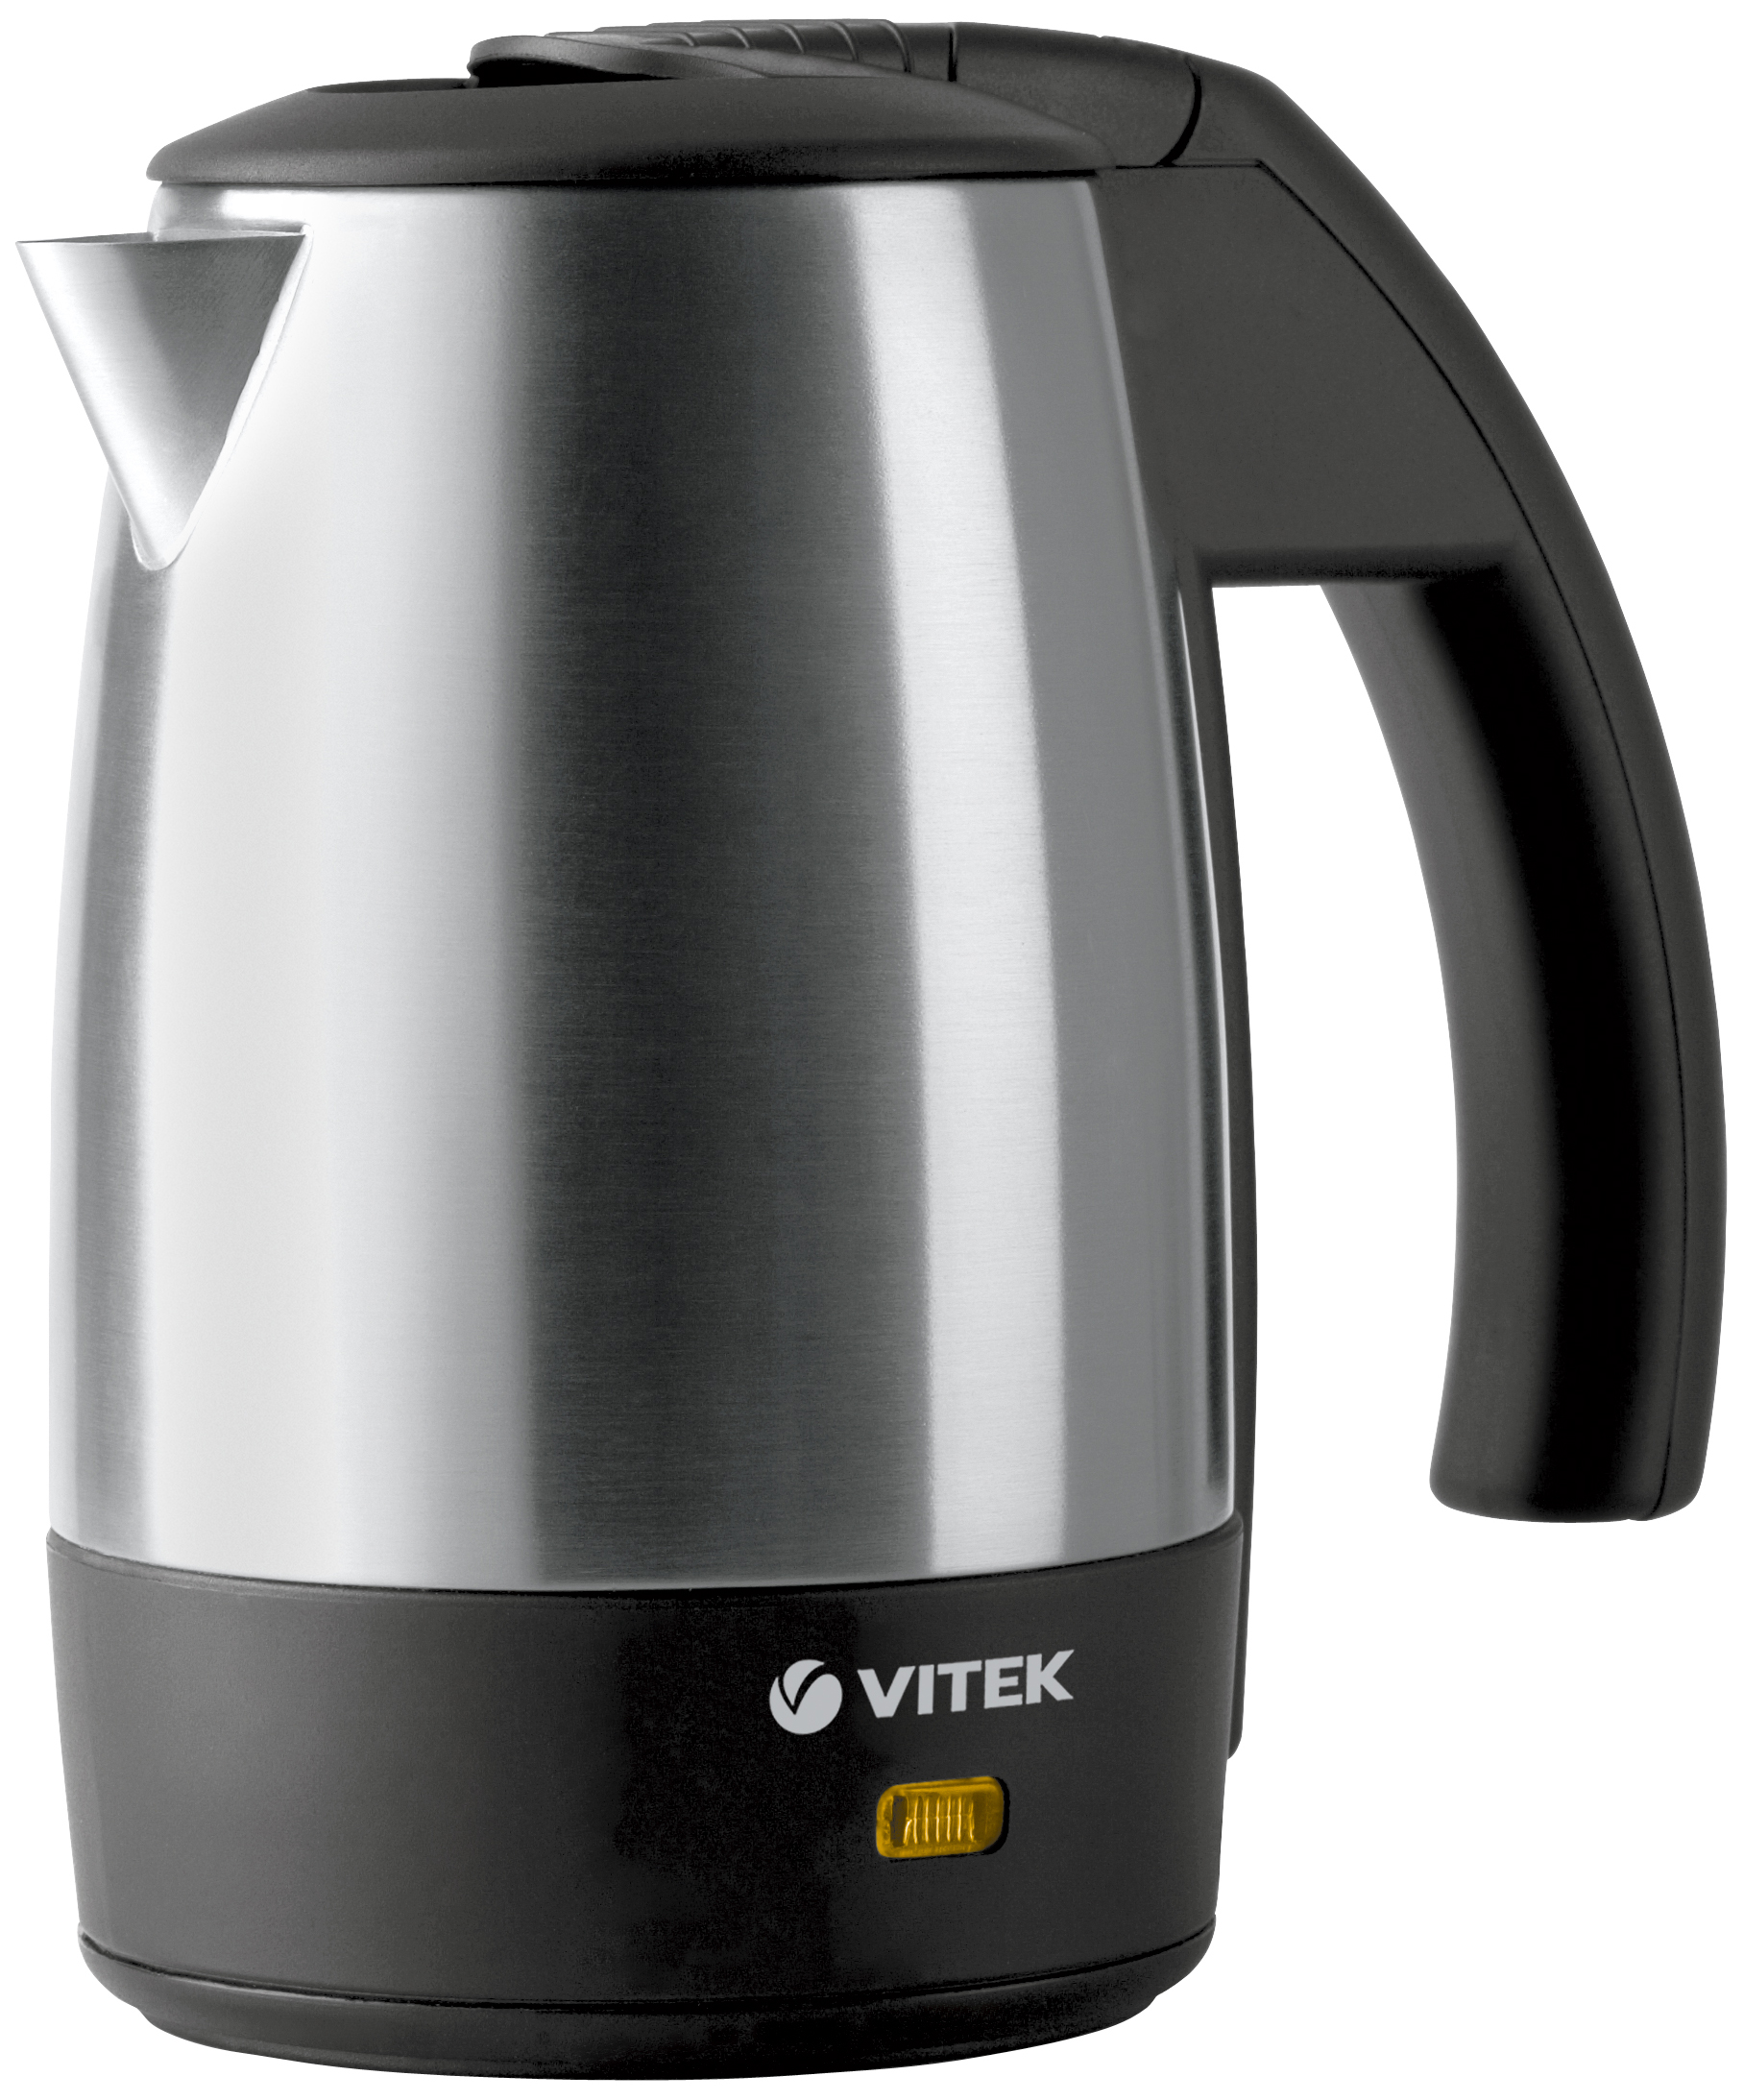 Чайник электрический VITEK VT-1154ST 0.5 л серебристый, черный 25 граммов счастья история маленького ежика который изменил жизнь человека ваккетта м томазелли а